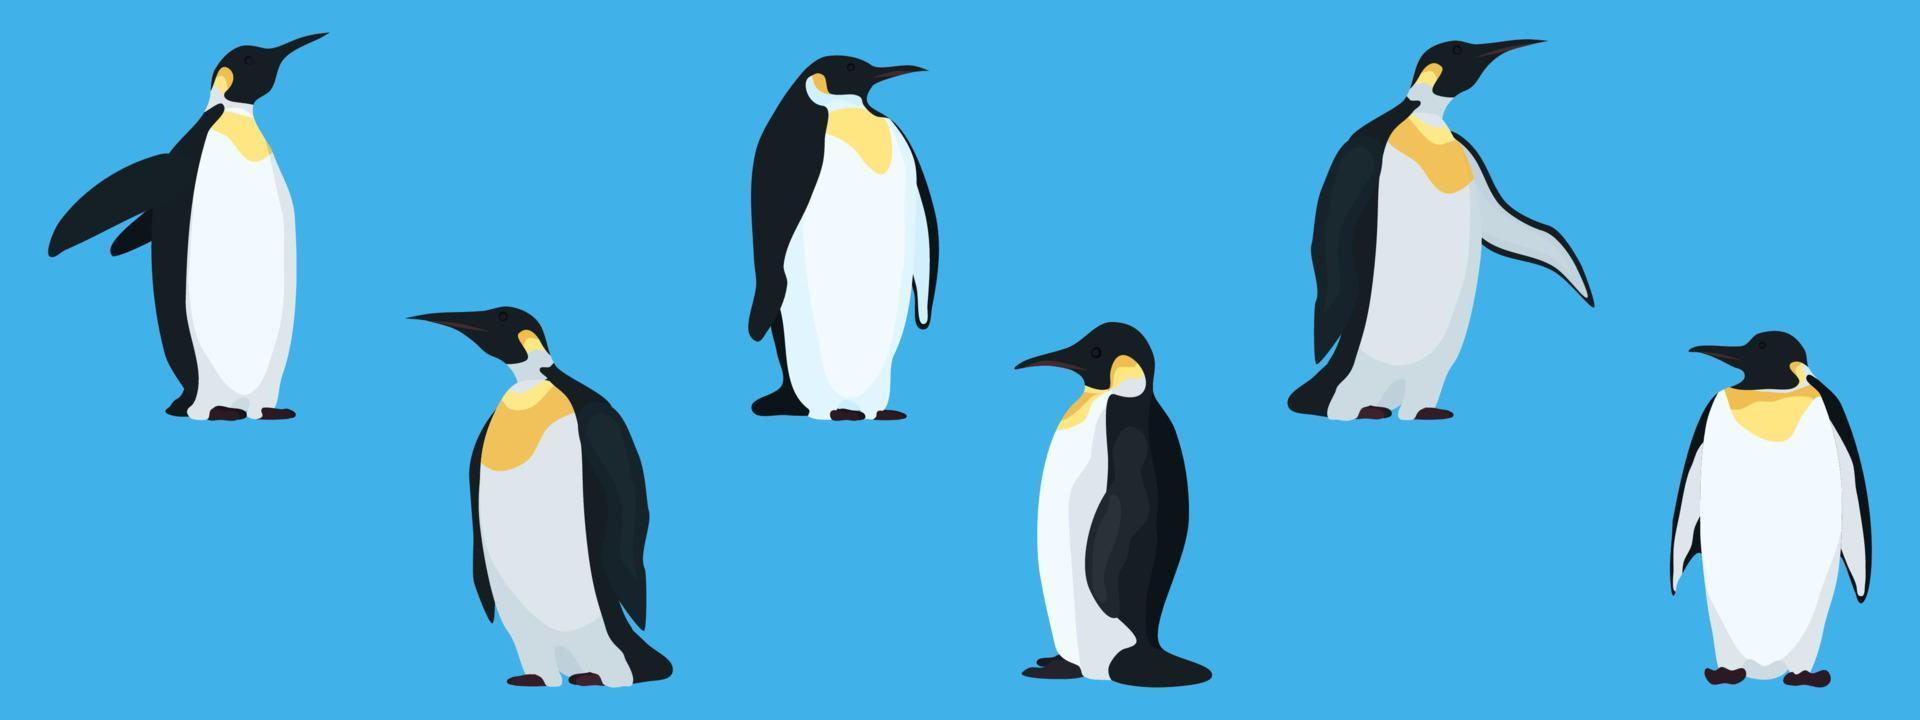 pingüinos planos sobre una colección de fondo azul vector